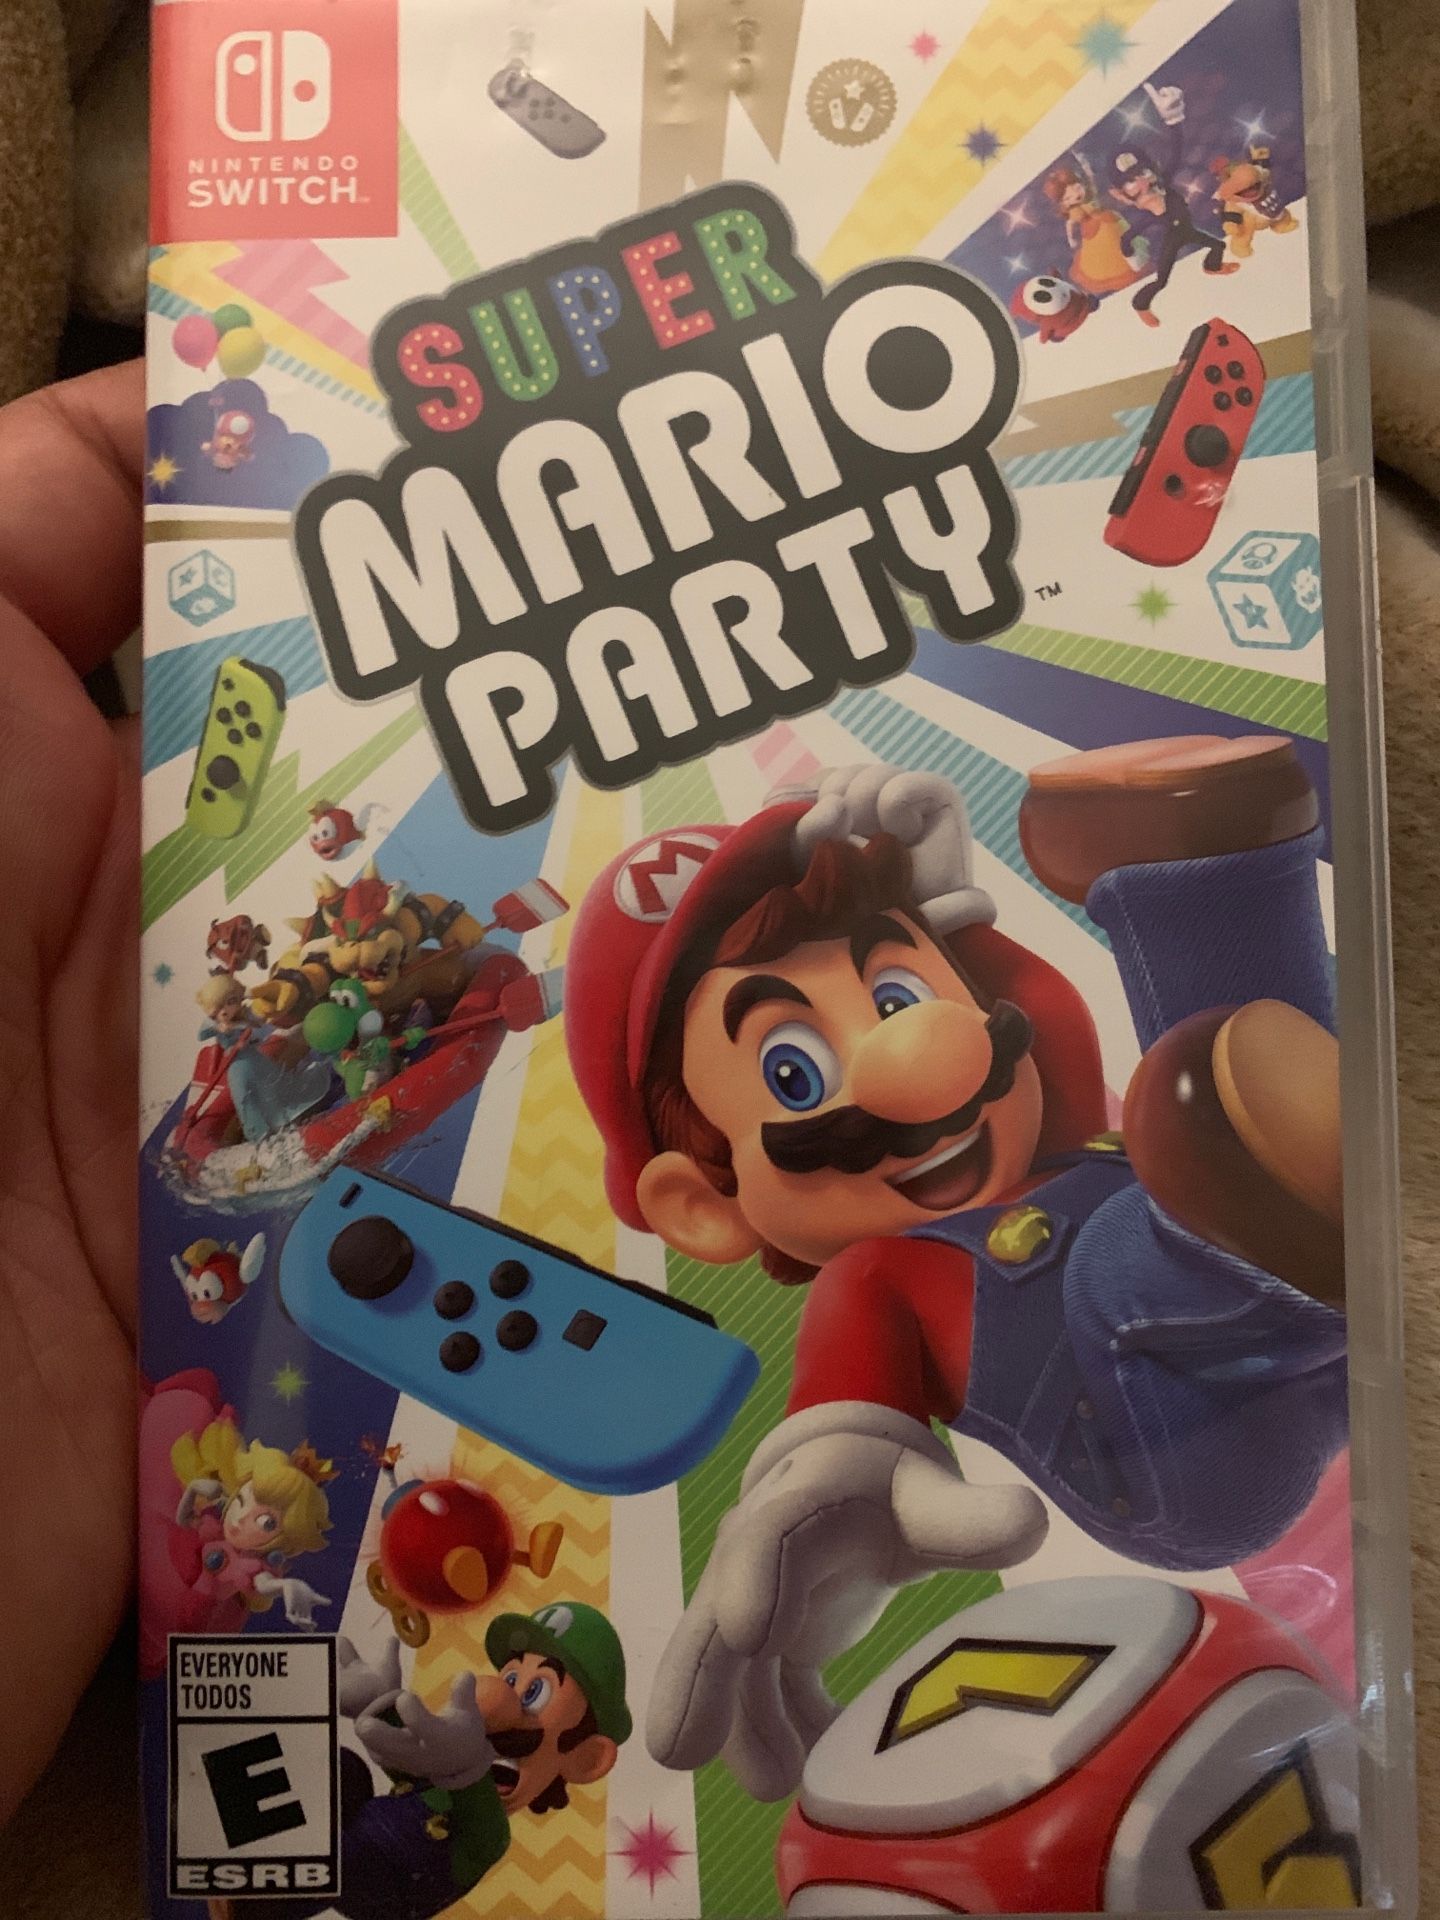 Super Mario party